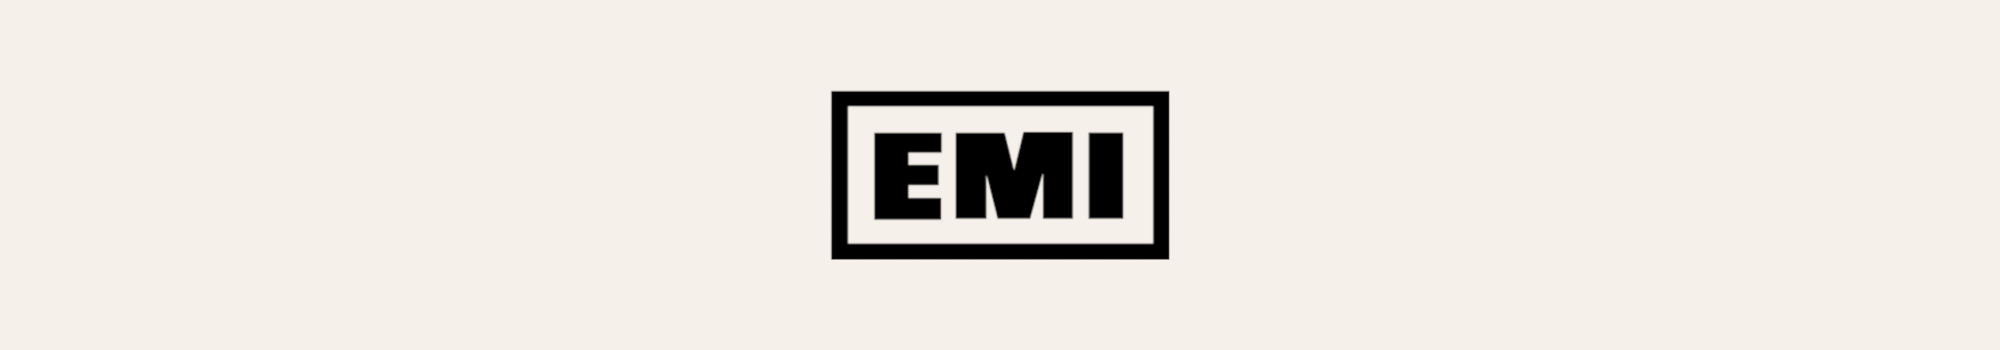 EMI Records logotyp